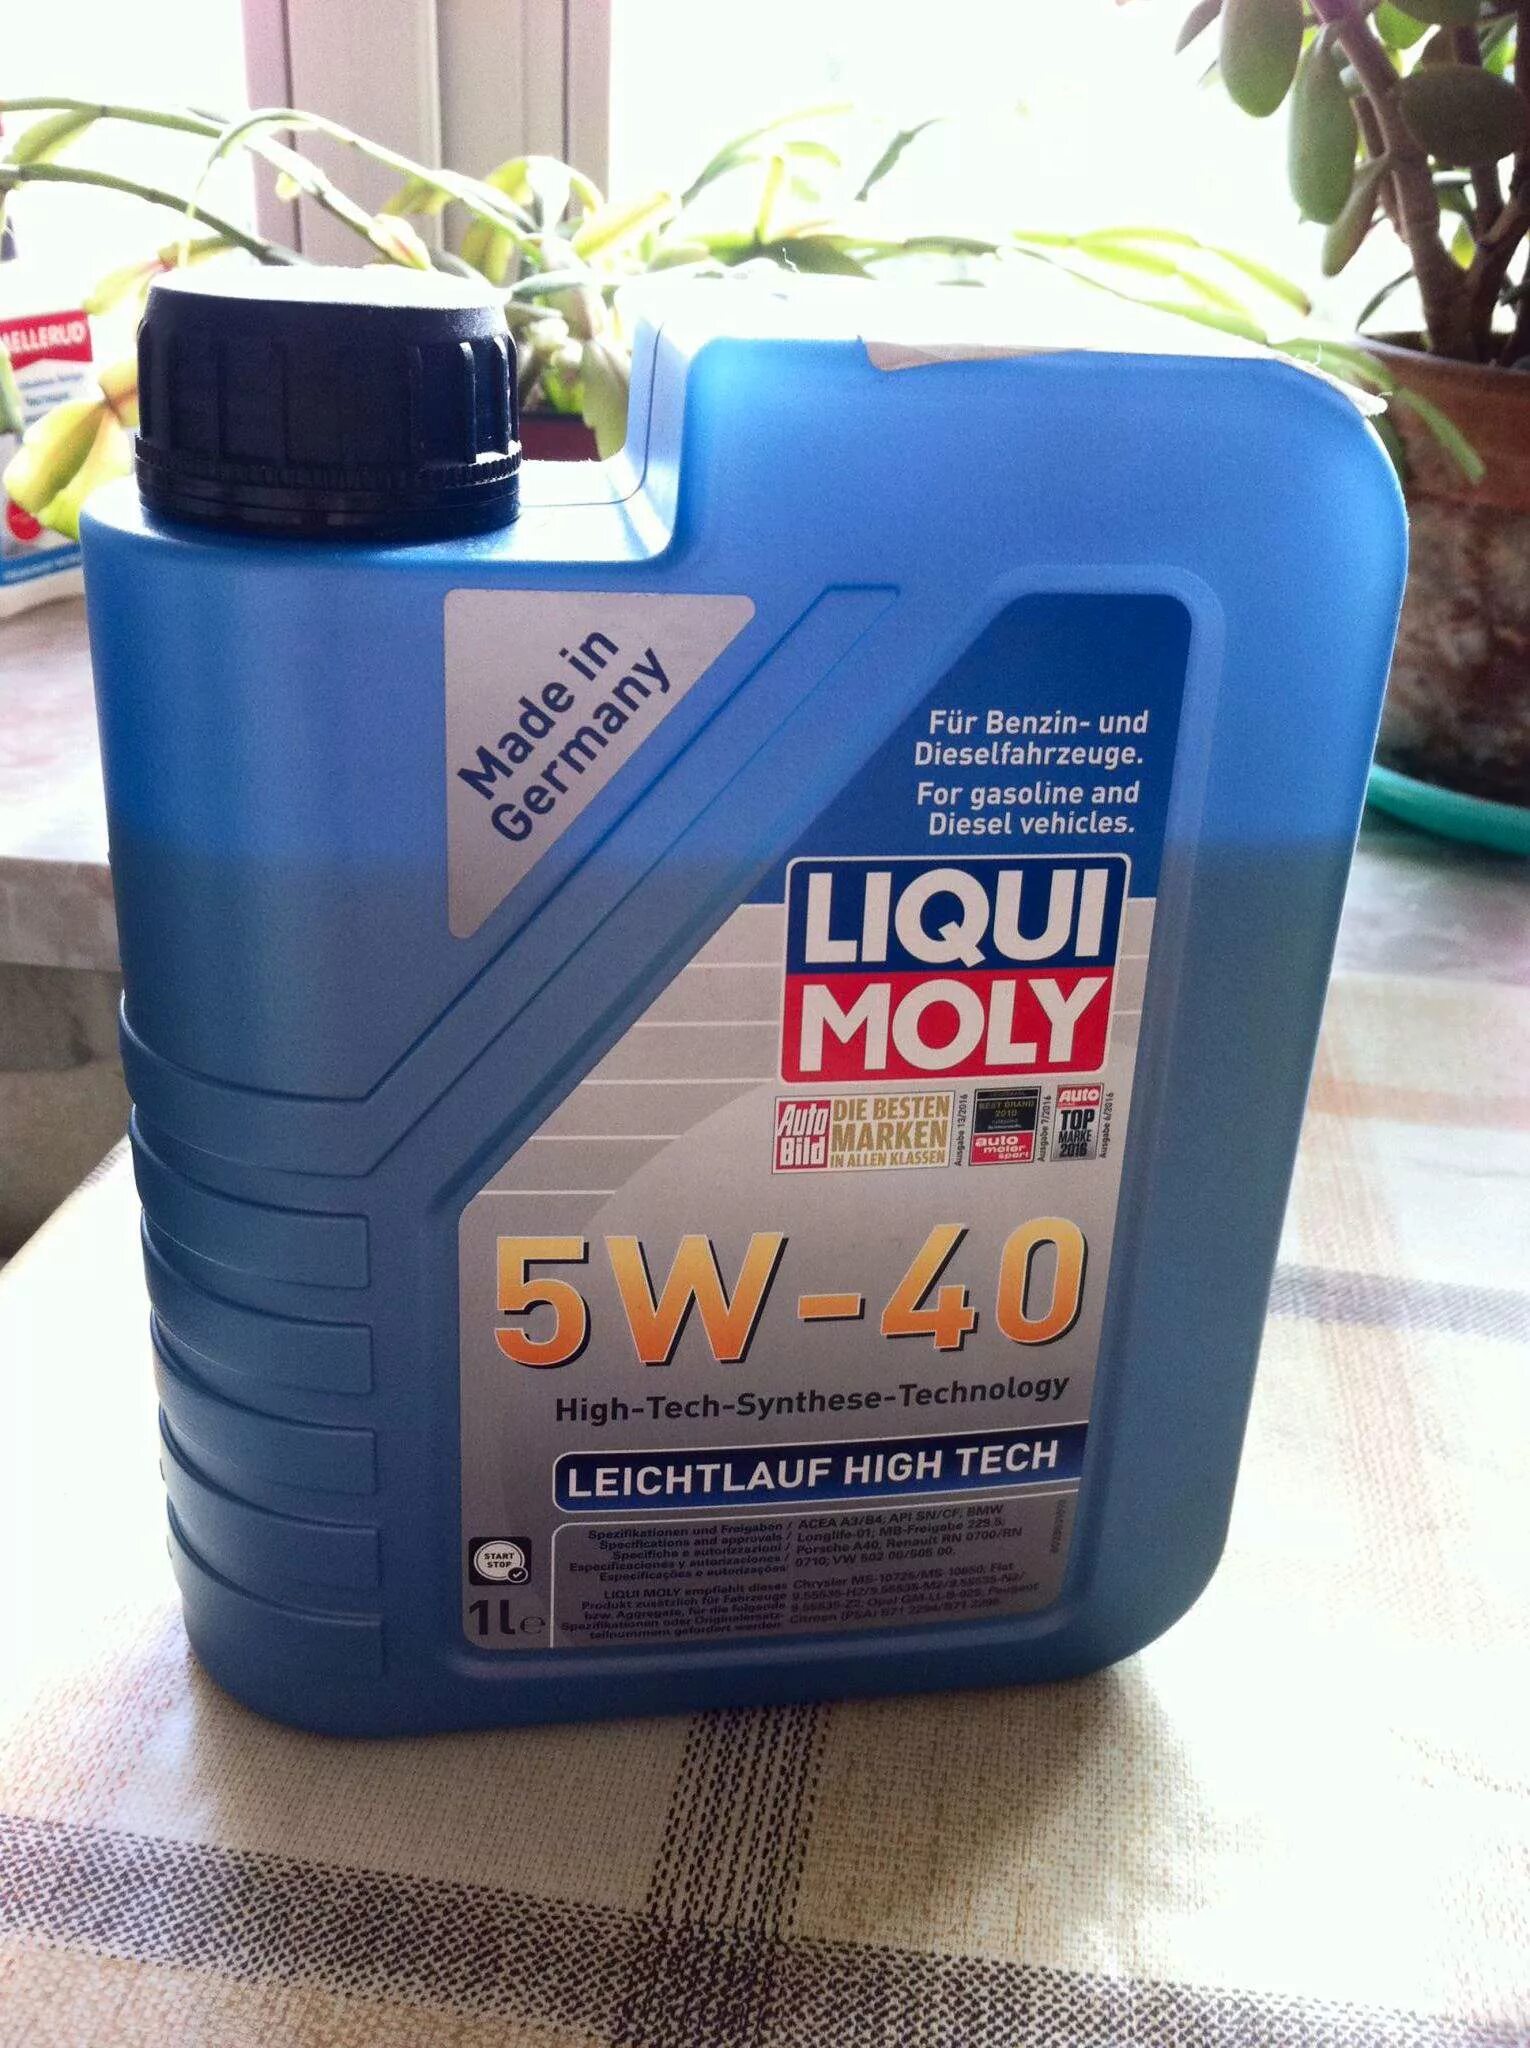 Liqui Moly ll 5w-40. Liqui Moly Leichtlauf High Tech 5w-40. Масло Ликви моли 5w40 синтетика. Масло Ликви моли 5w40 полусинтетика.